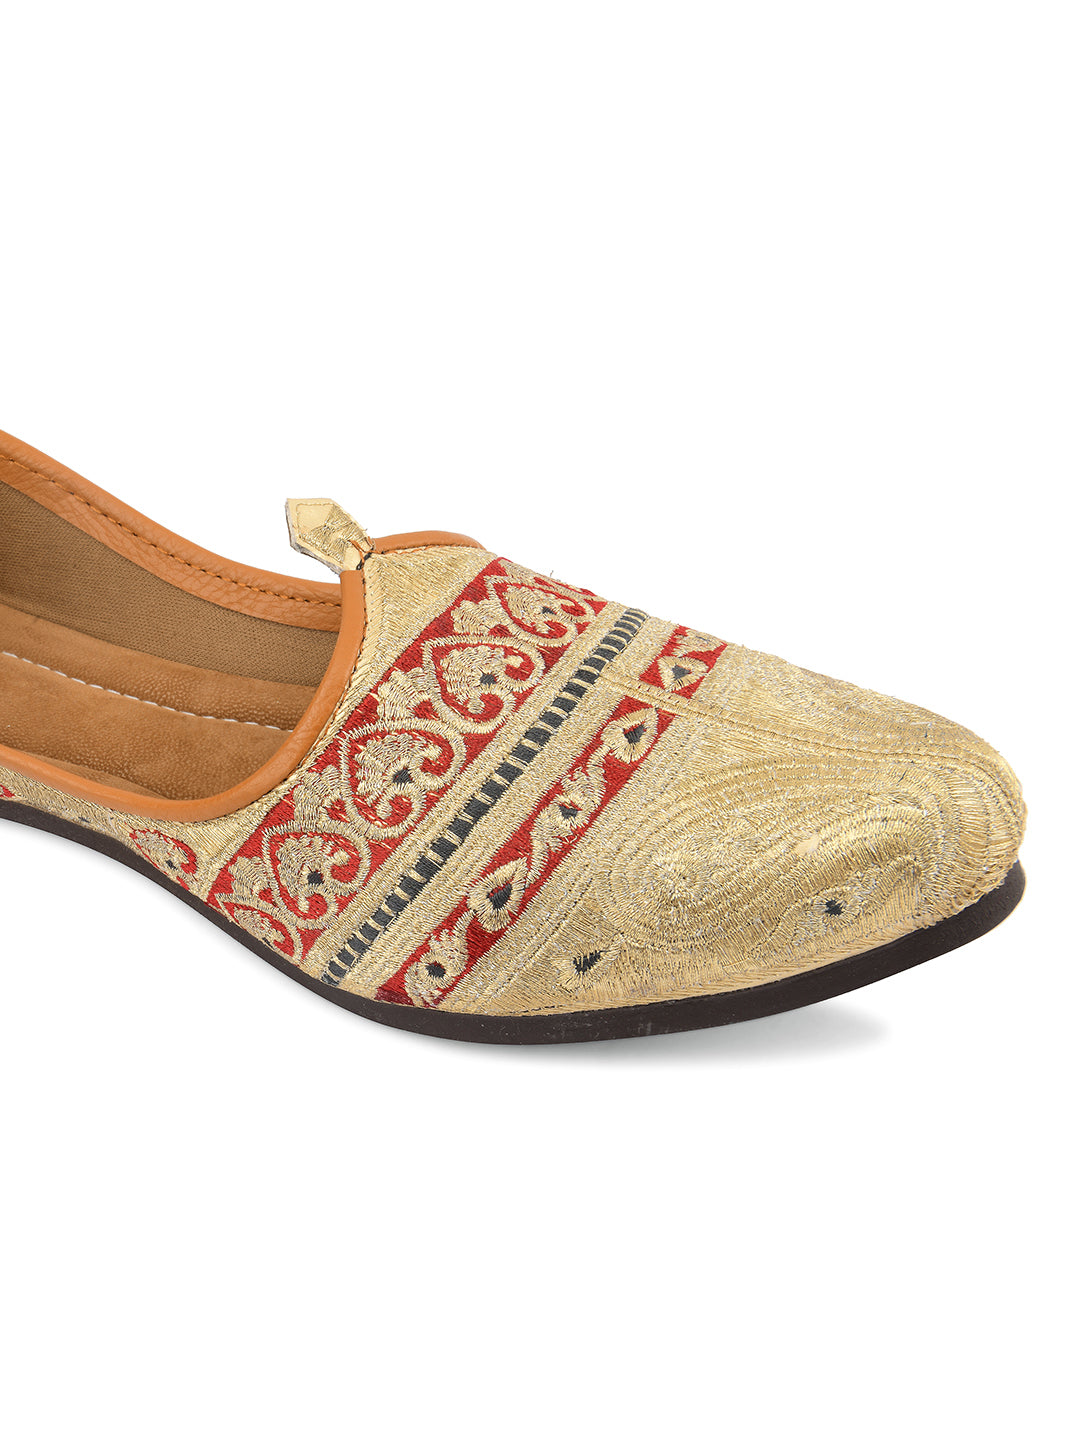 DESI COLOUR Mens Multi Ethnic Footwear/Punjabi Jutti